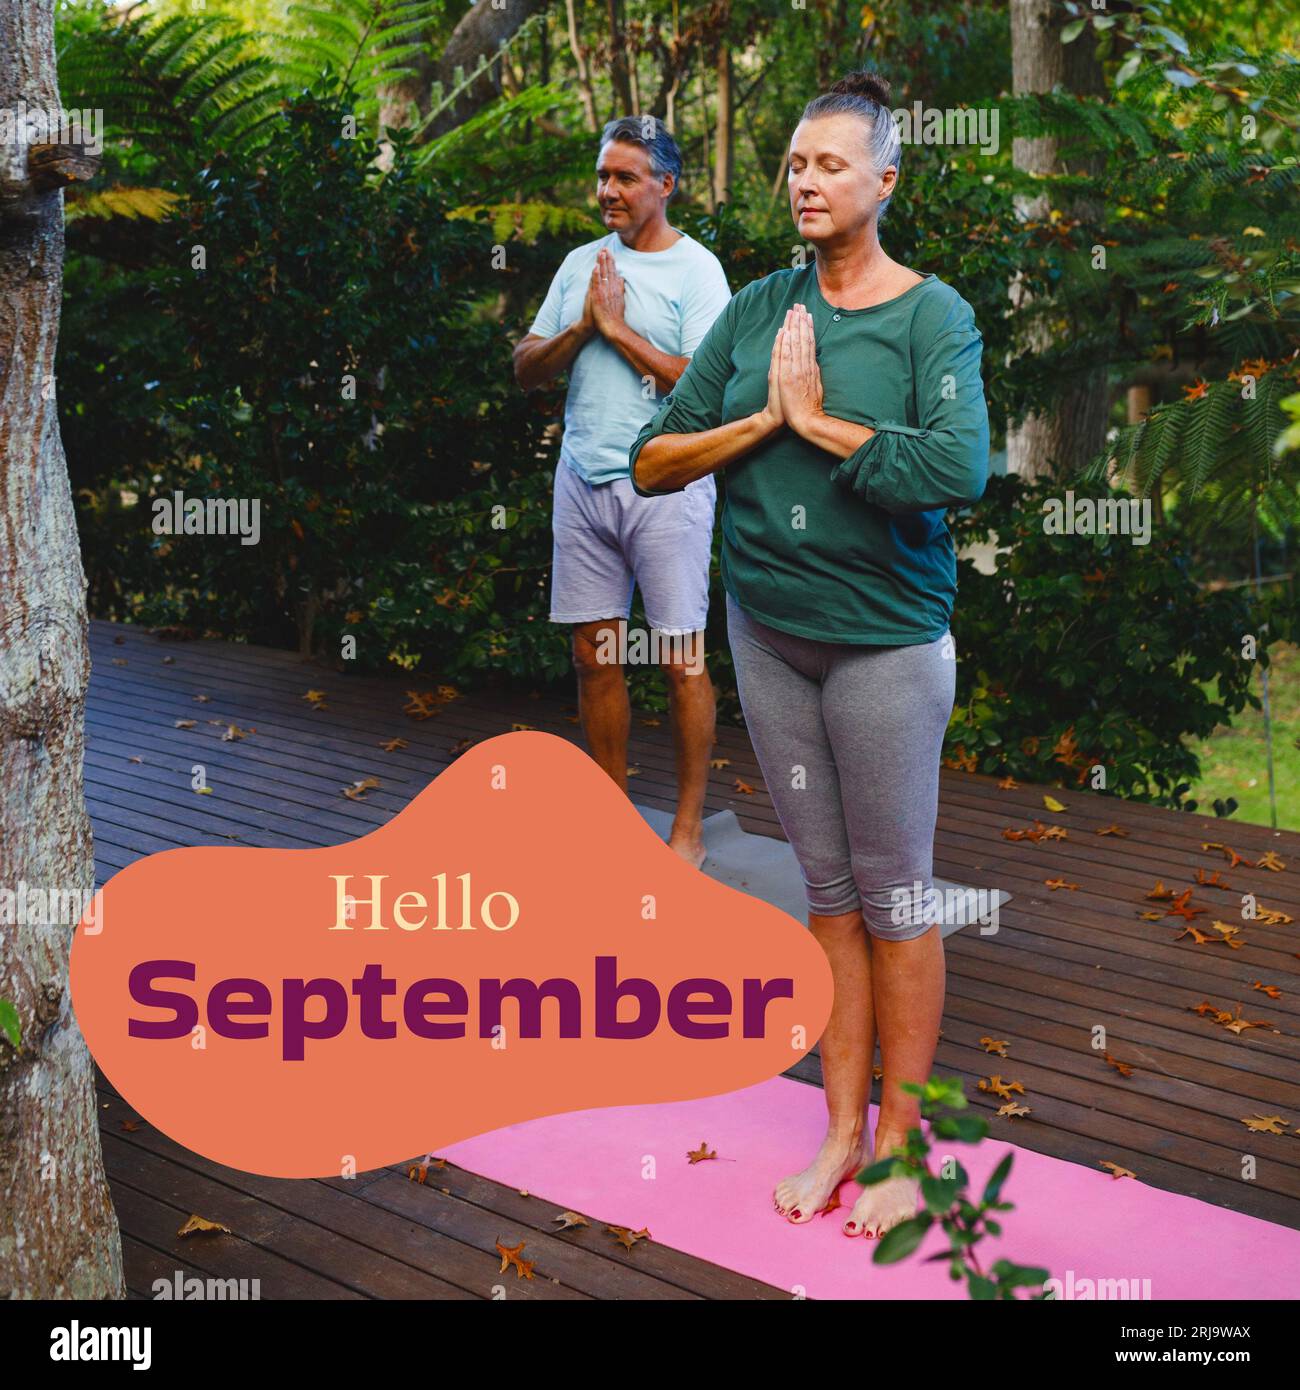 Komposition aus dem Hello-september-Text über kaukasisches Paar, das Yoga im Garten praktiziert Stockfoto